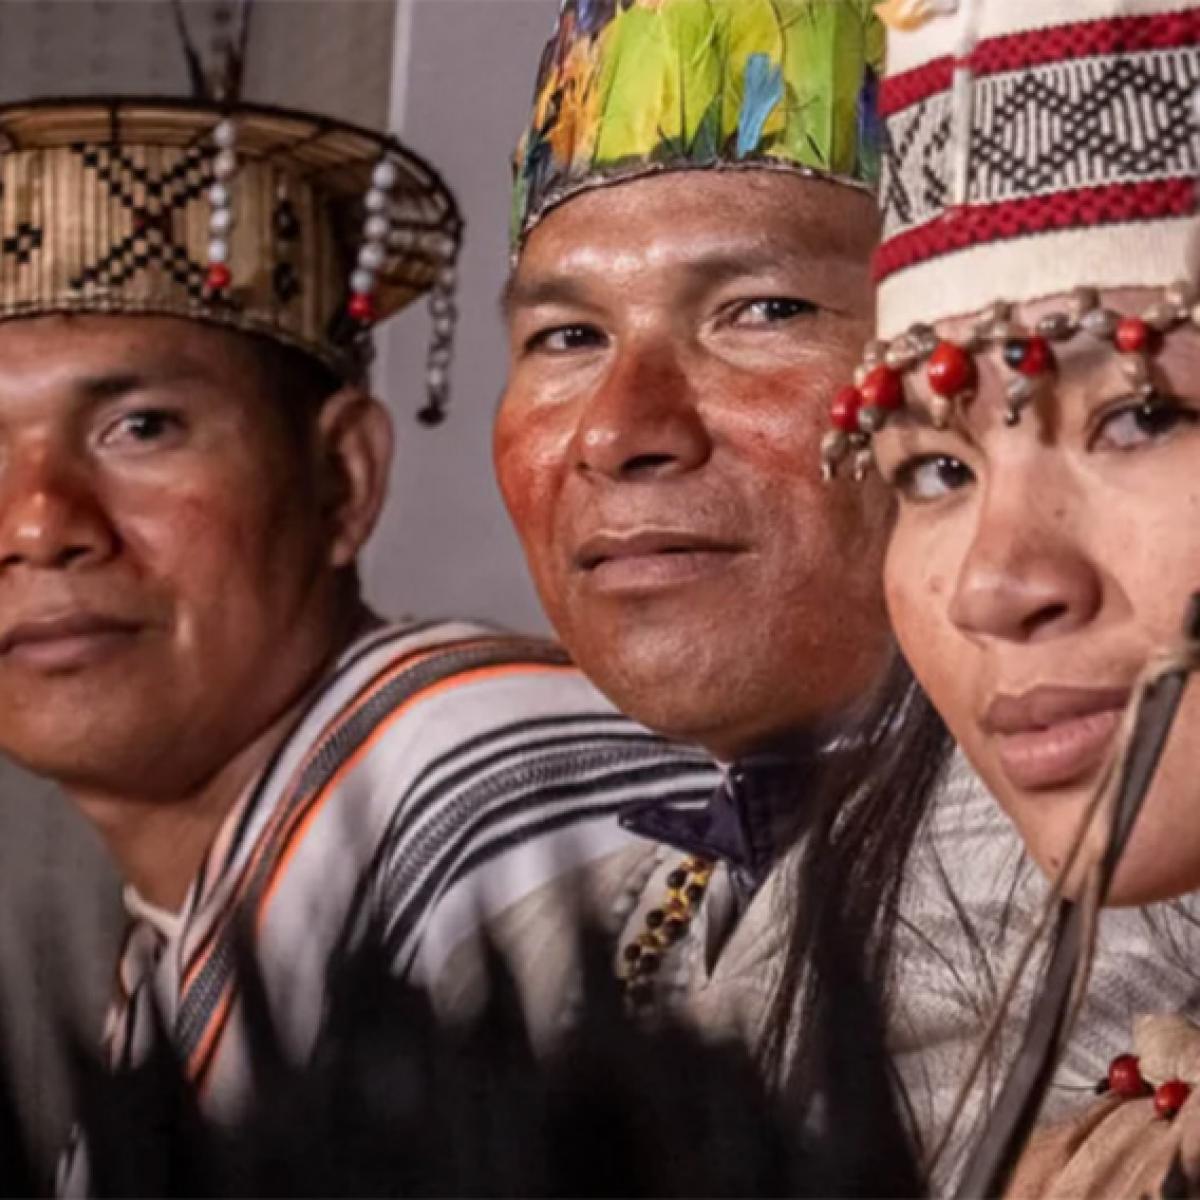 Rostros de tres personas indígenas, dos hombres y una mujer.